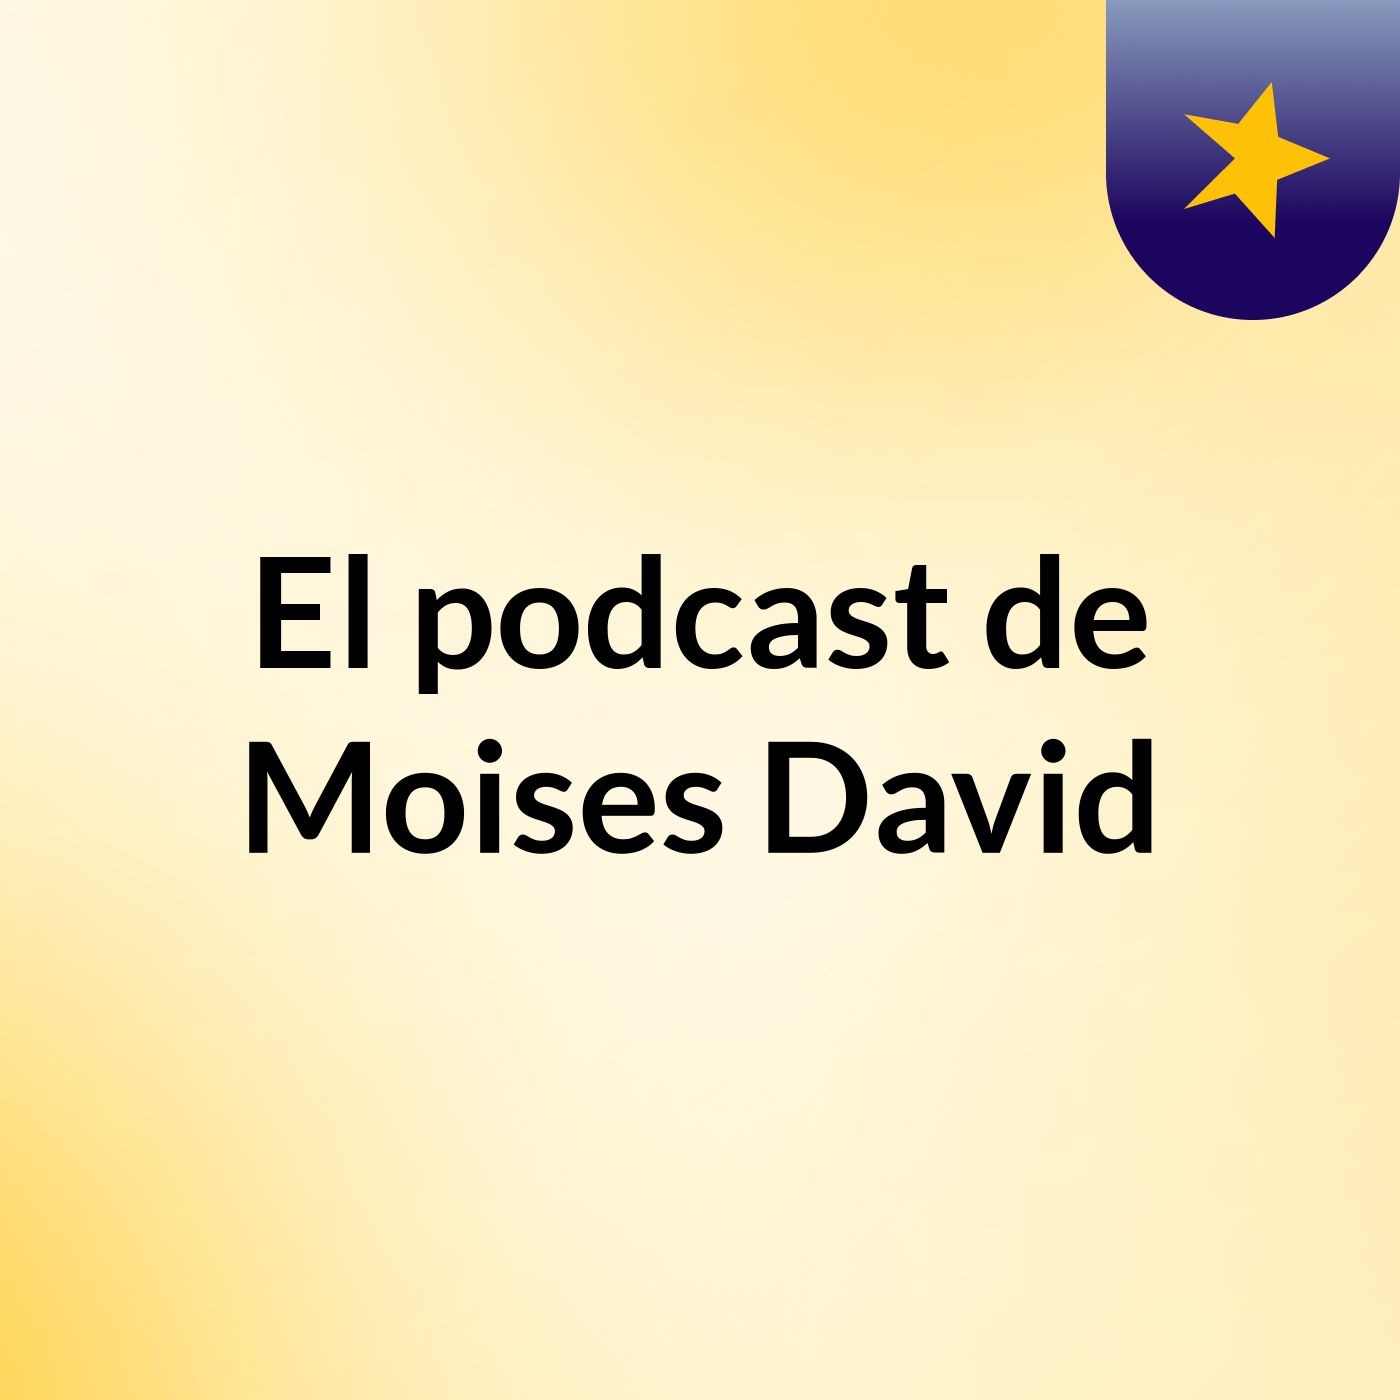 El podcast de Moises David